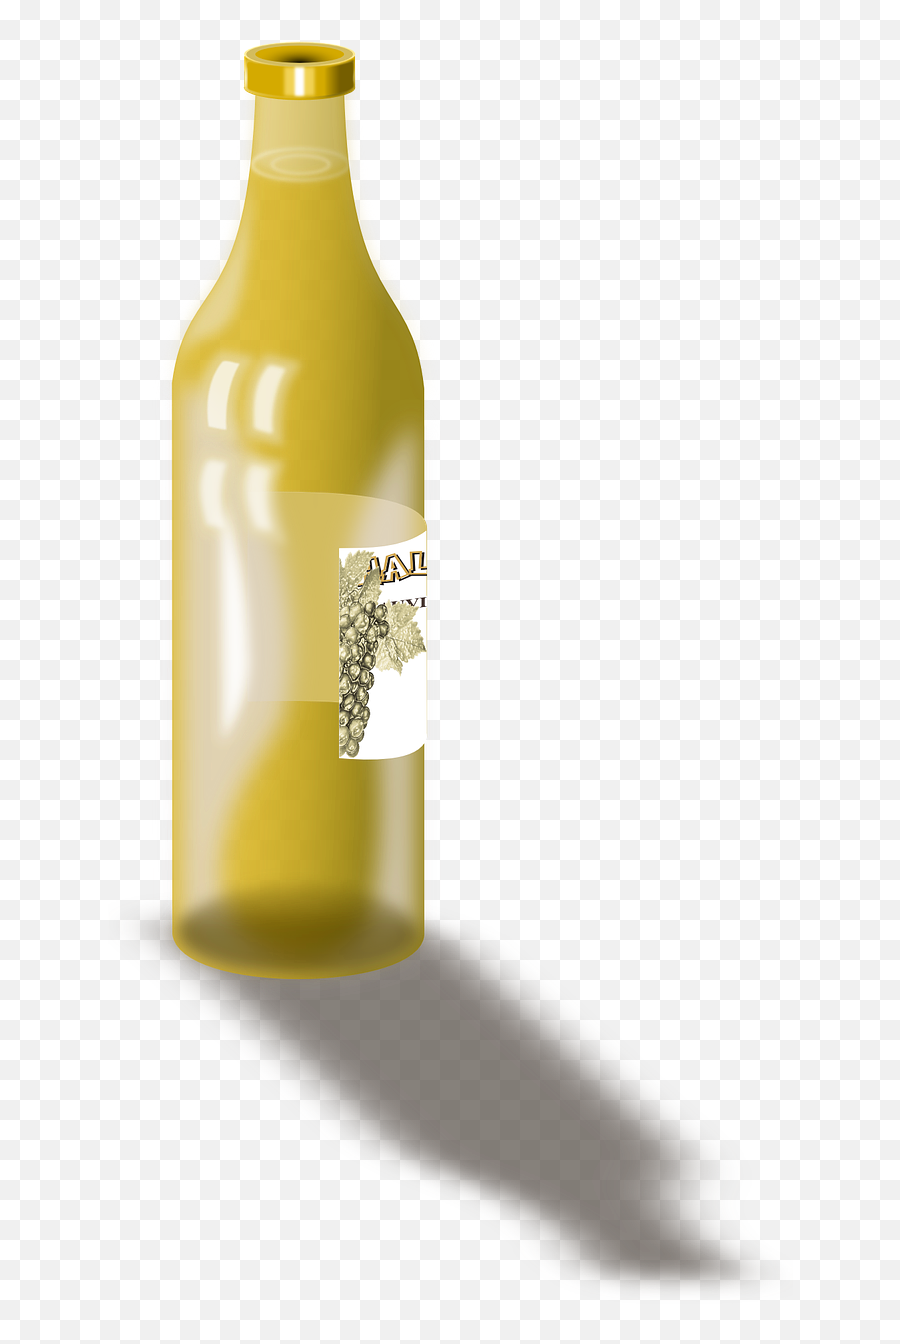 Bottle Wine Drink Alcohol Beverage - Glass Bottle Emoji,Apple Thumbs Up Emoji